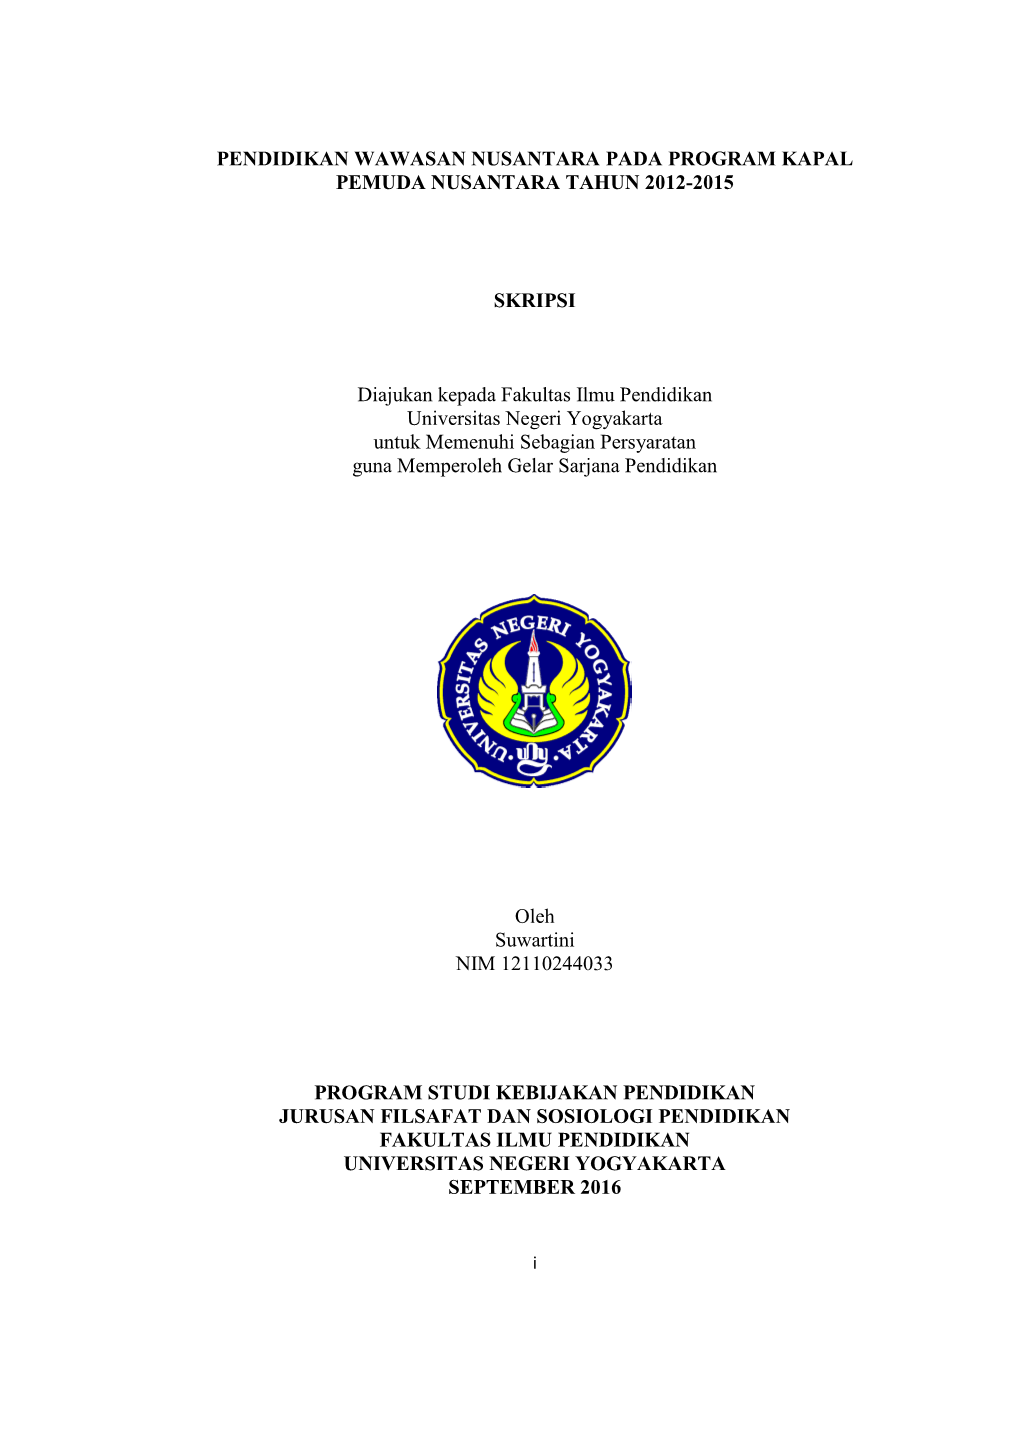 Pendidikan Wawasan Nusantara Pada Program Kapal Pemuda Nusantara Tahun 2012-2015